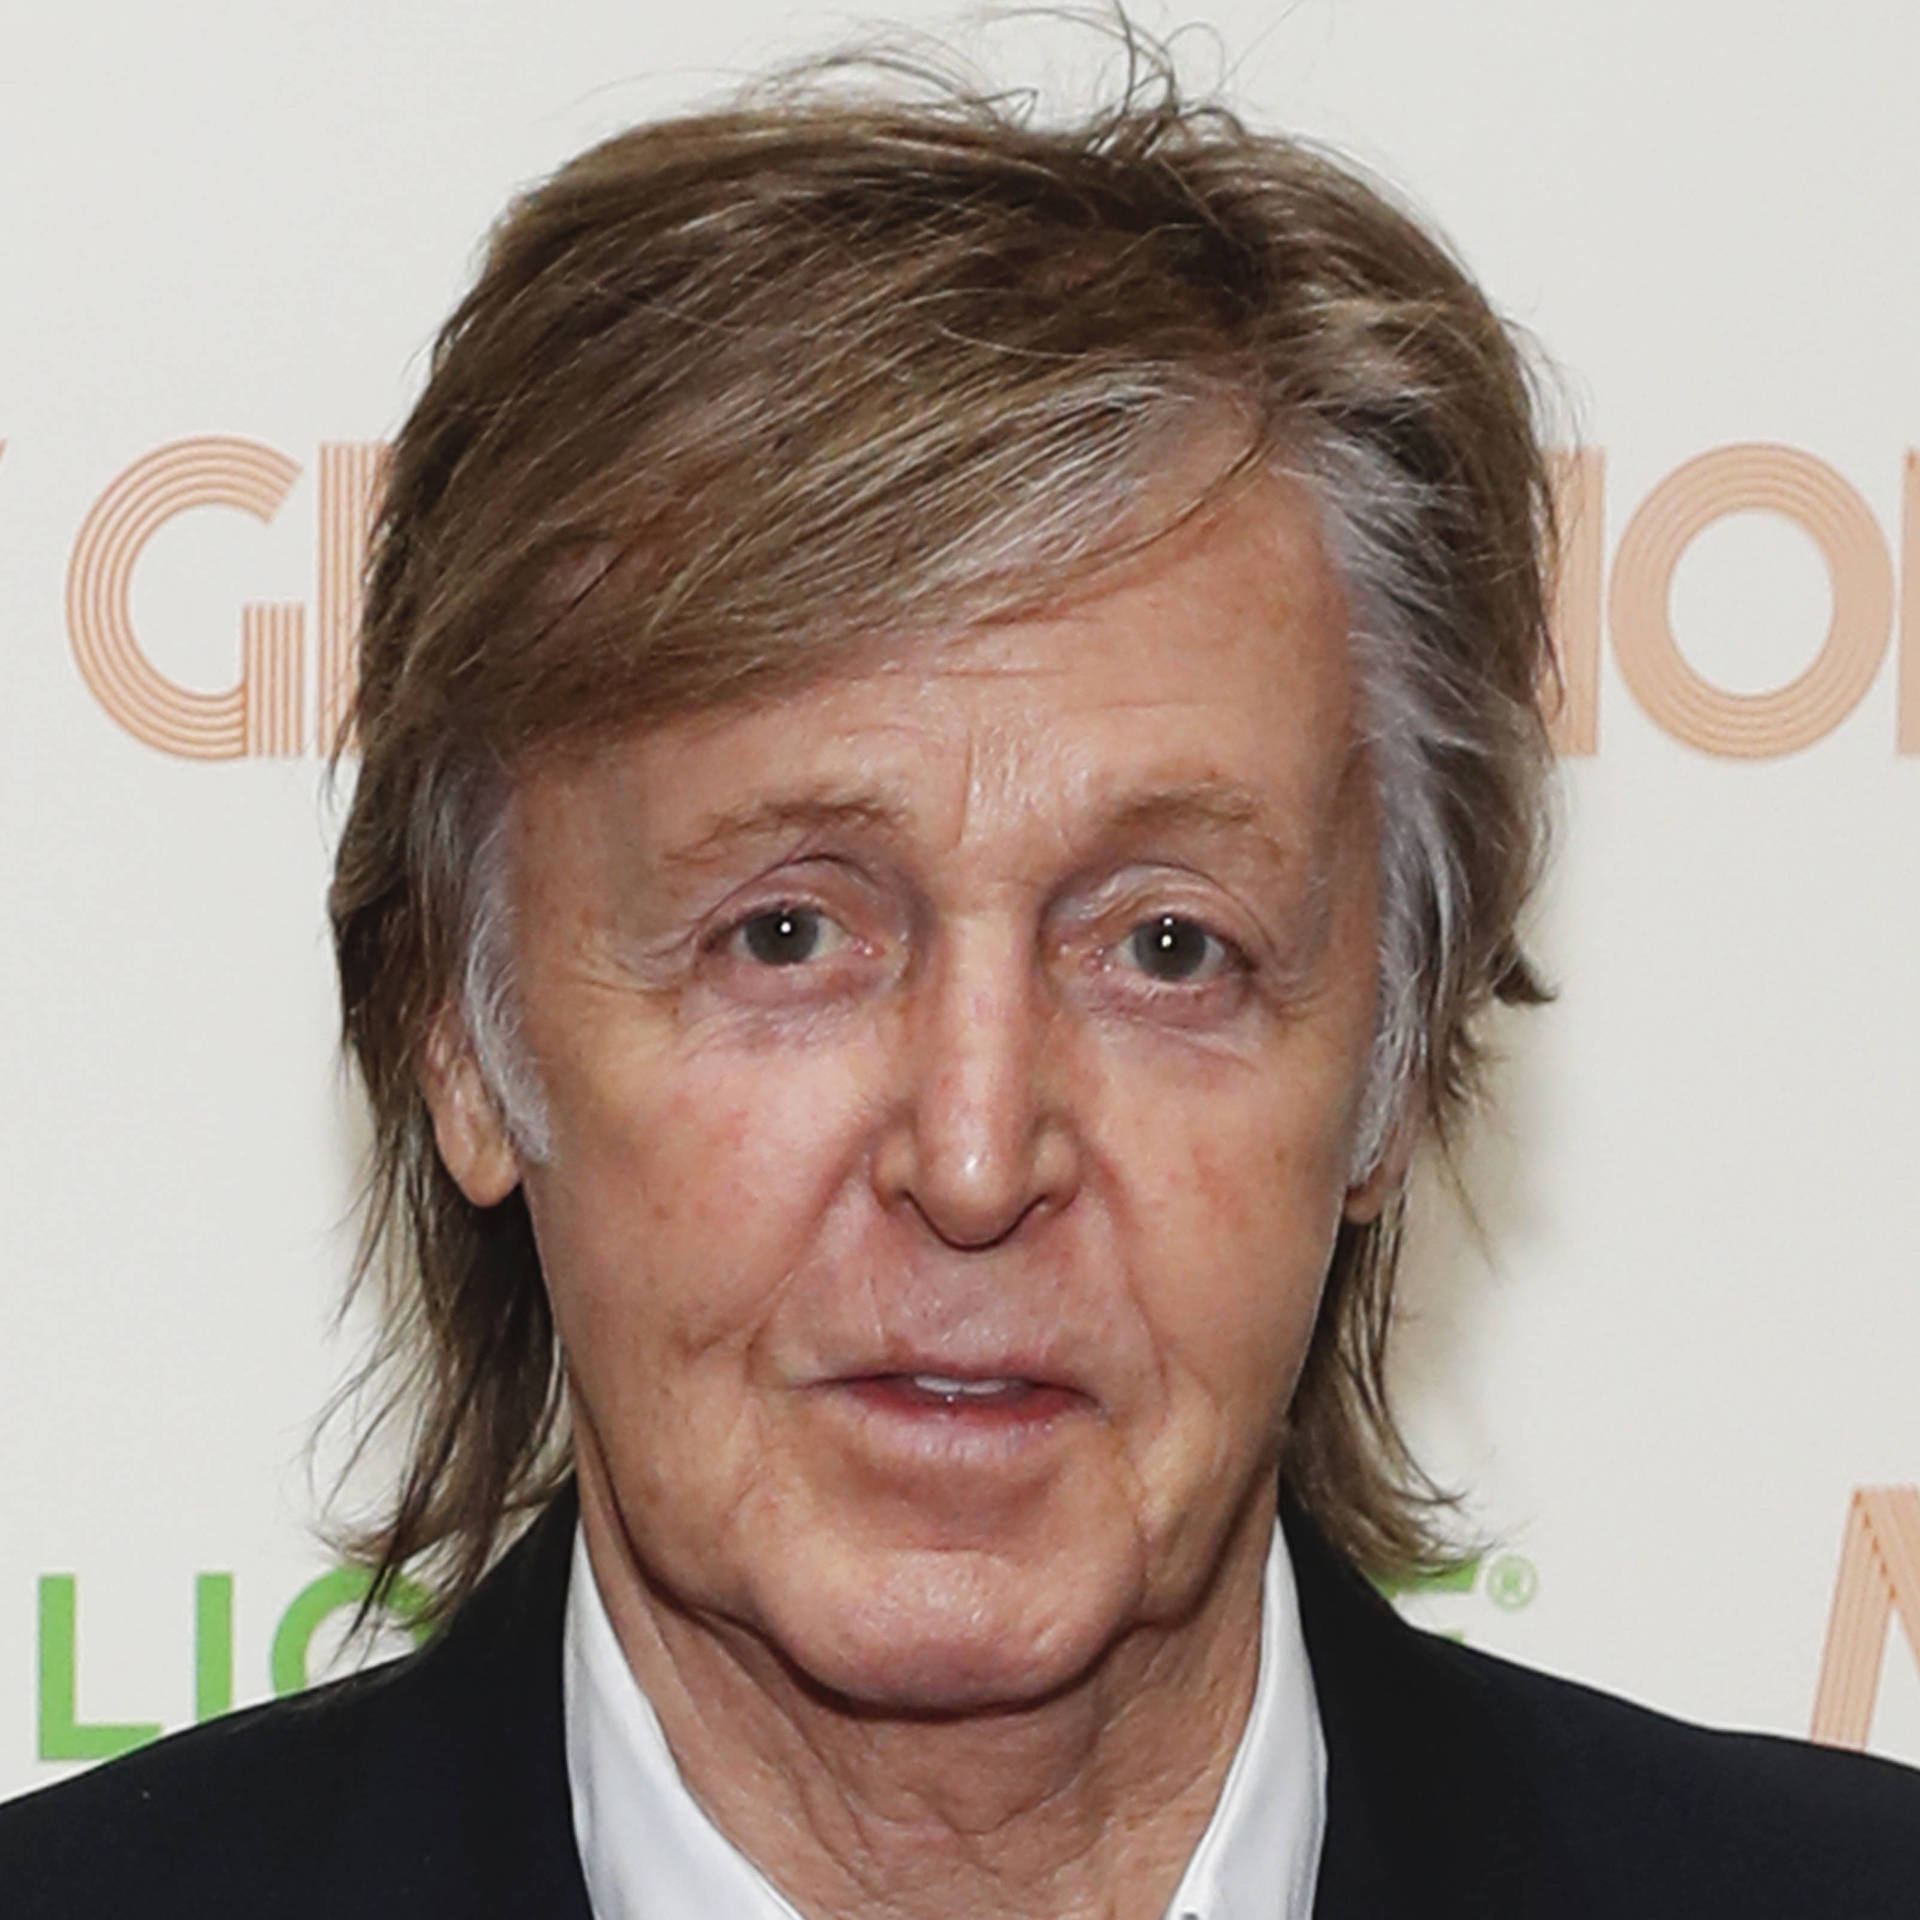 Paul McCartney der ser gammel ud Wallpaper